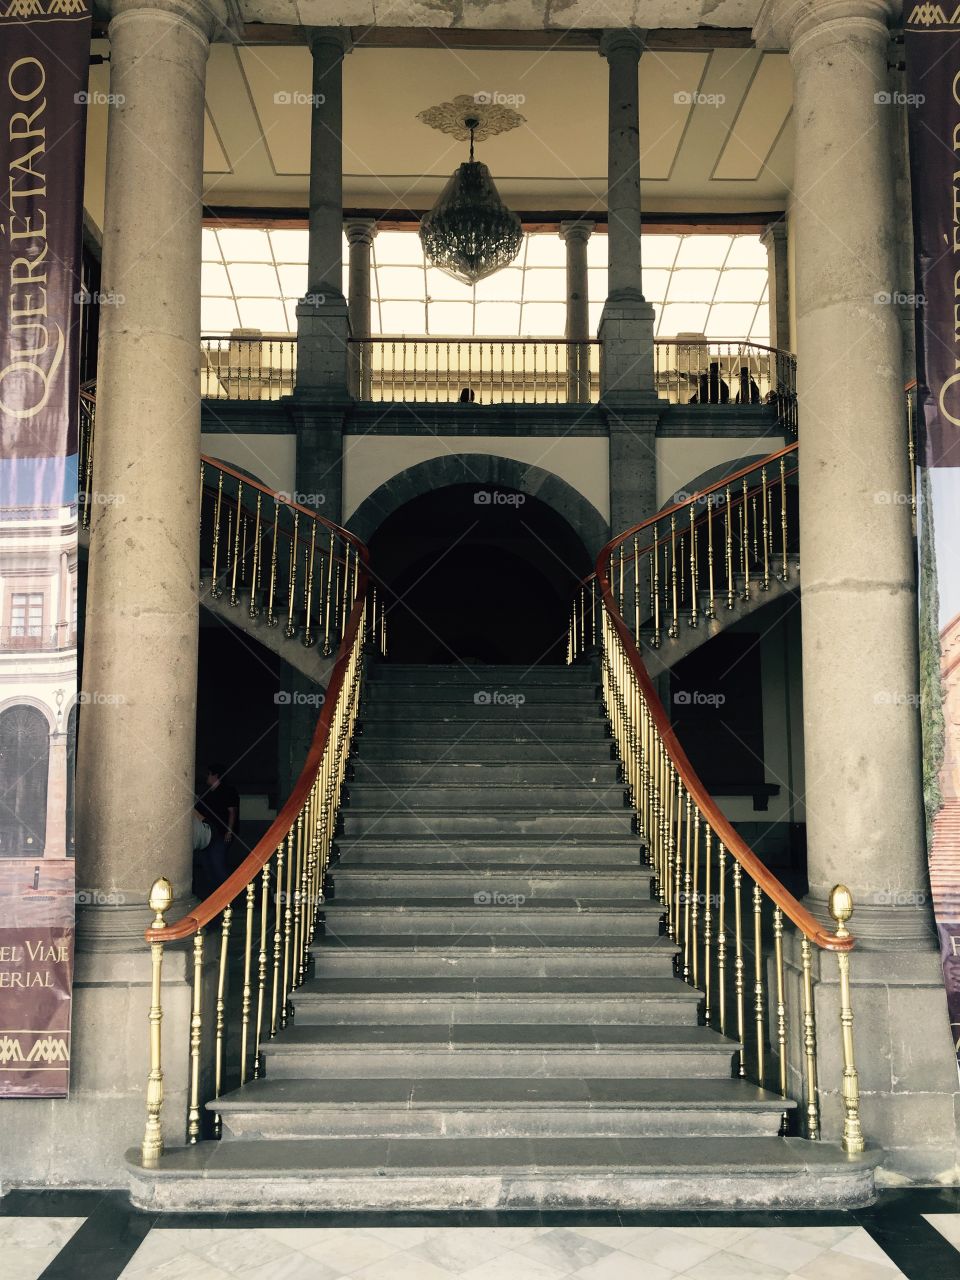 Escalera imperial.